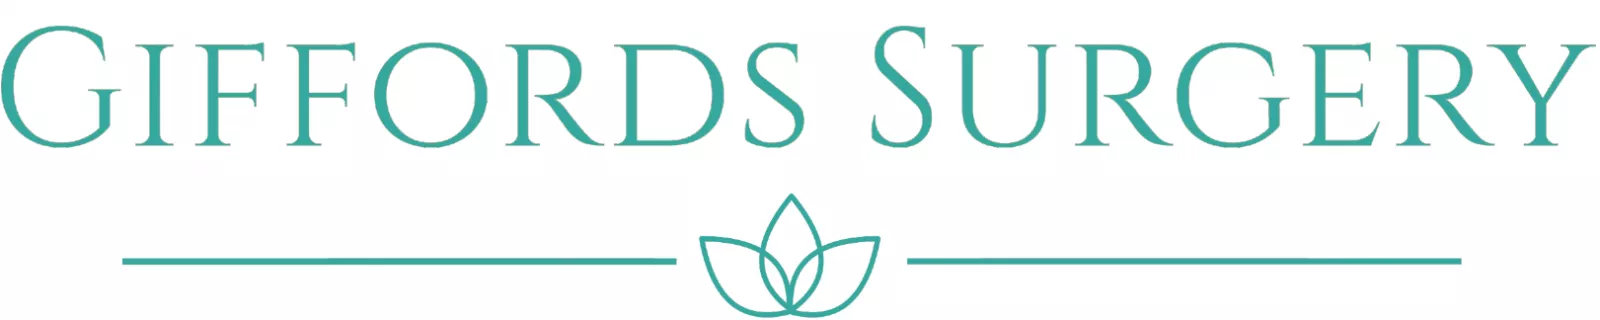 Giffords Surgery logo